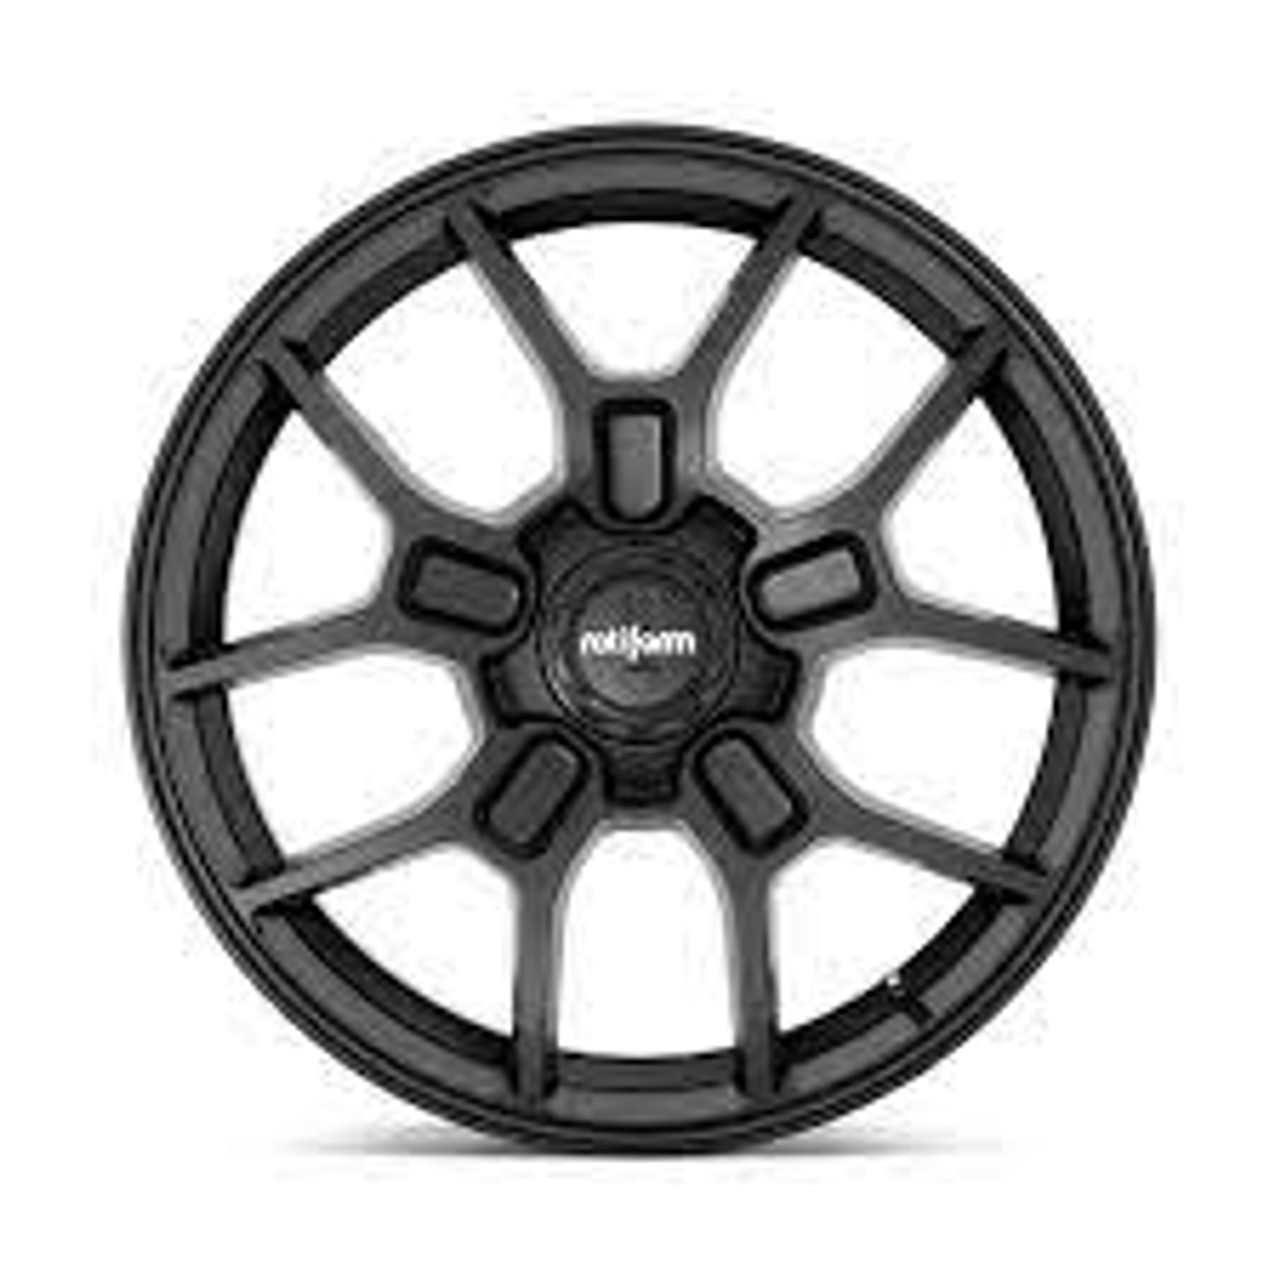 Rotiform R177 ZMO Wheel 19x8.5 5x114.3 35 Offset - Matte Black